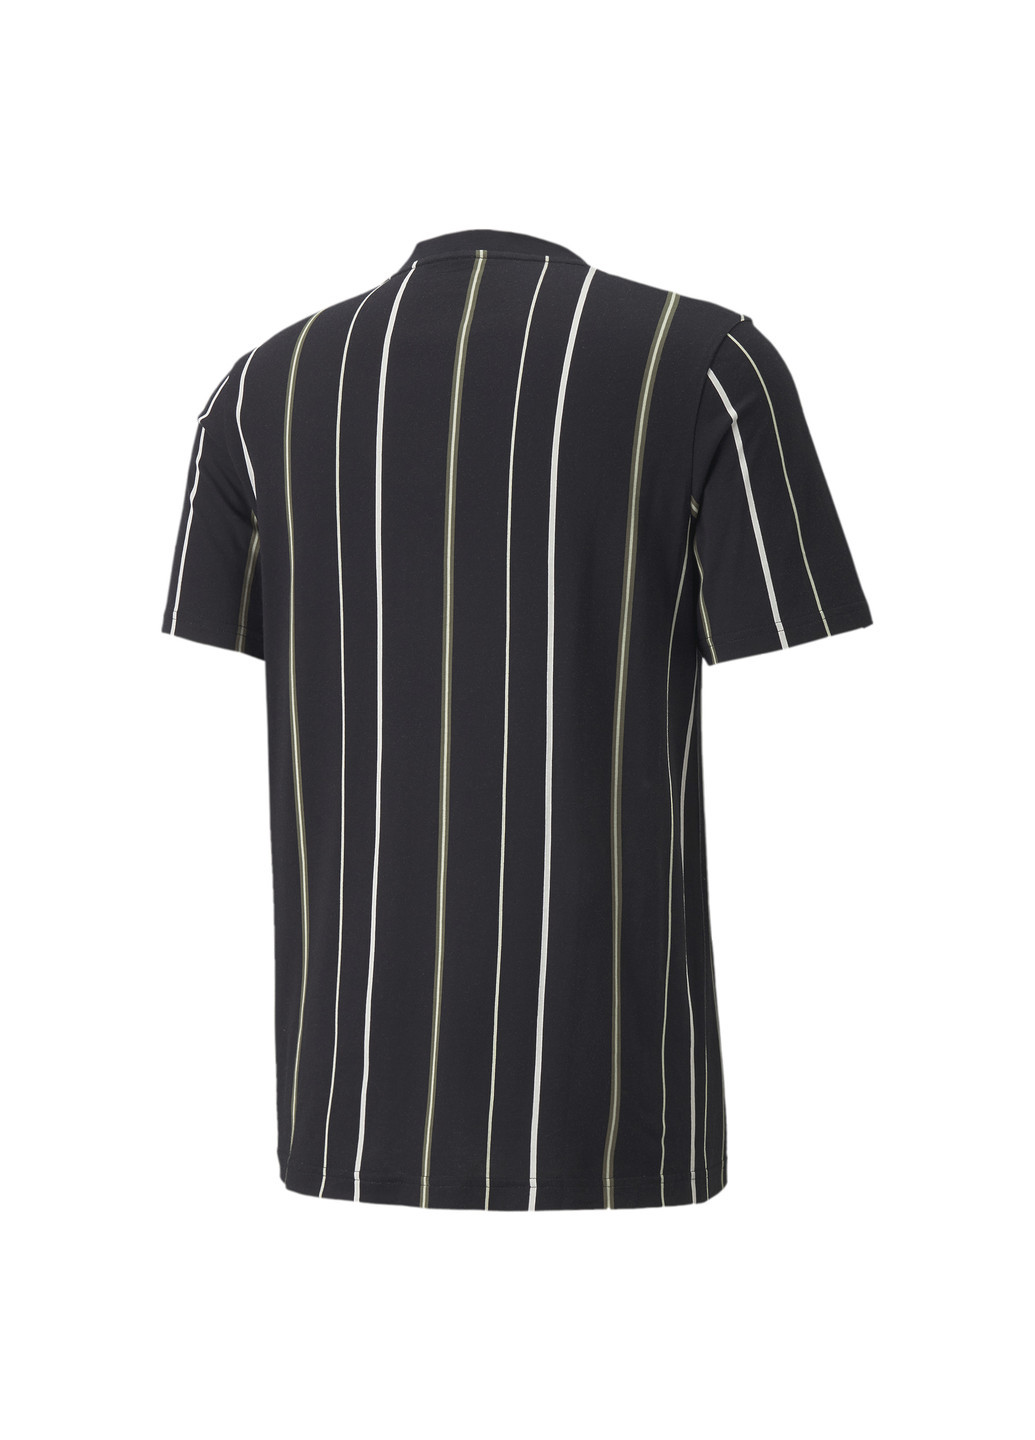 Черная футболка modern basics striped men's tee Puma